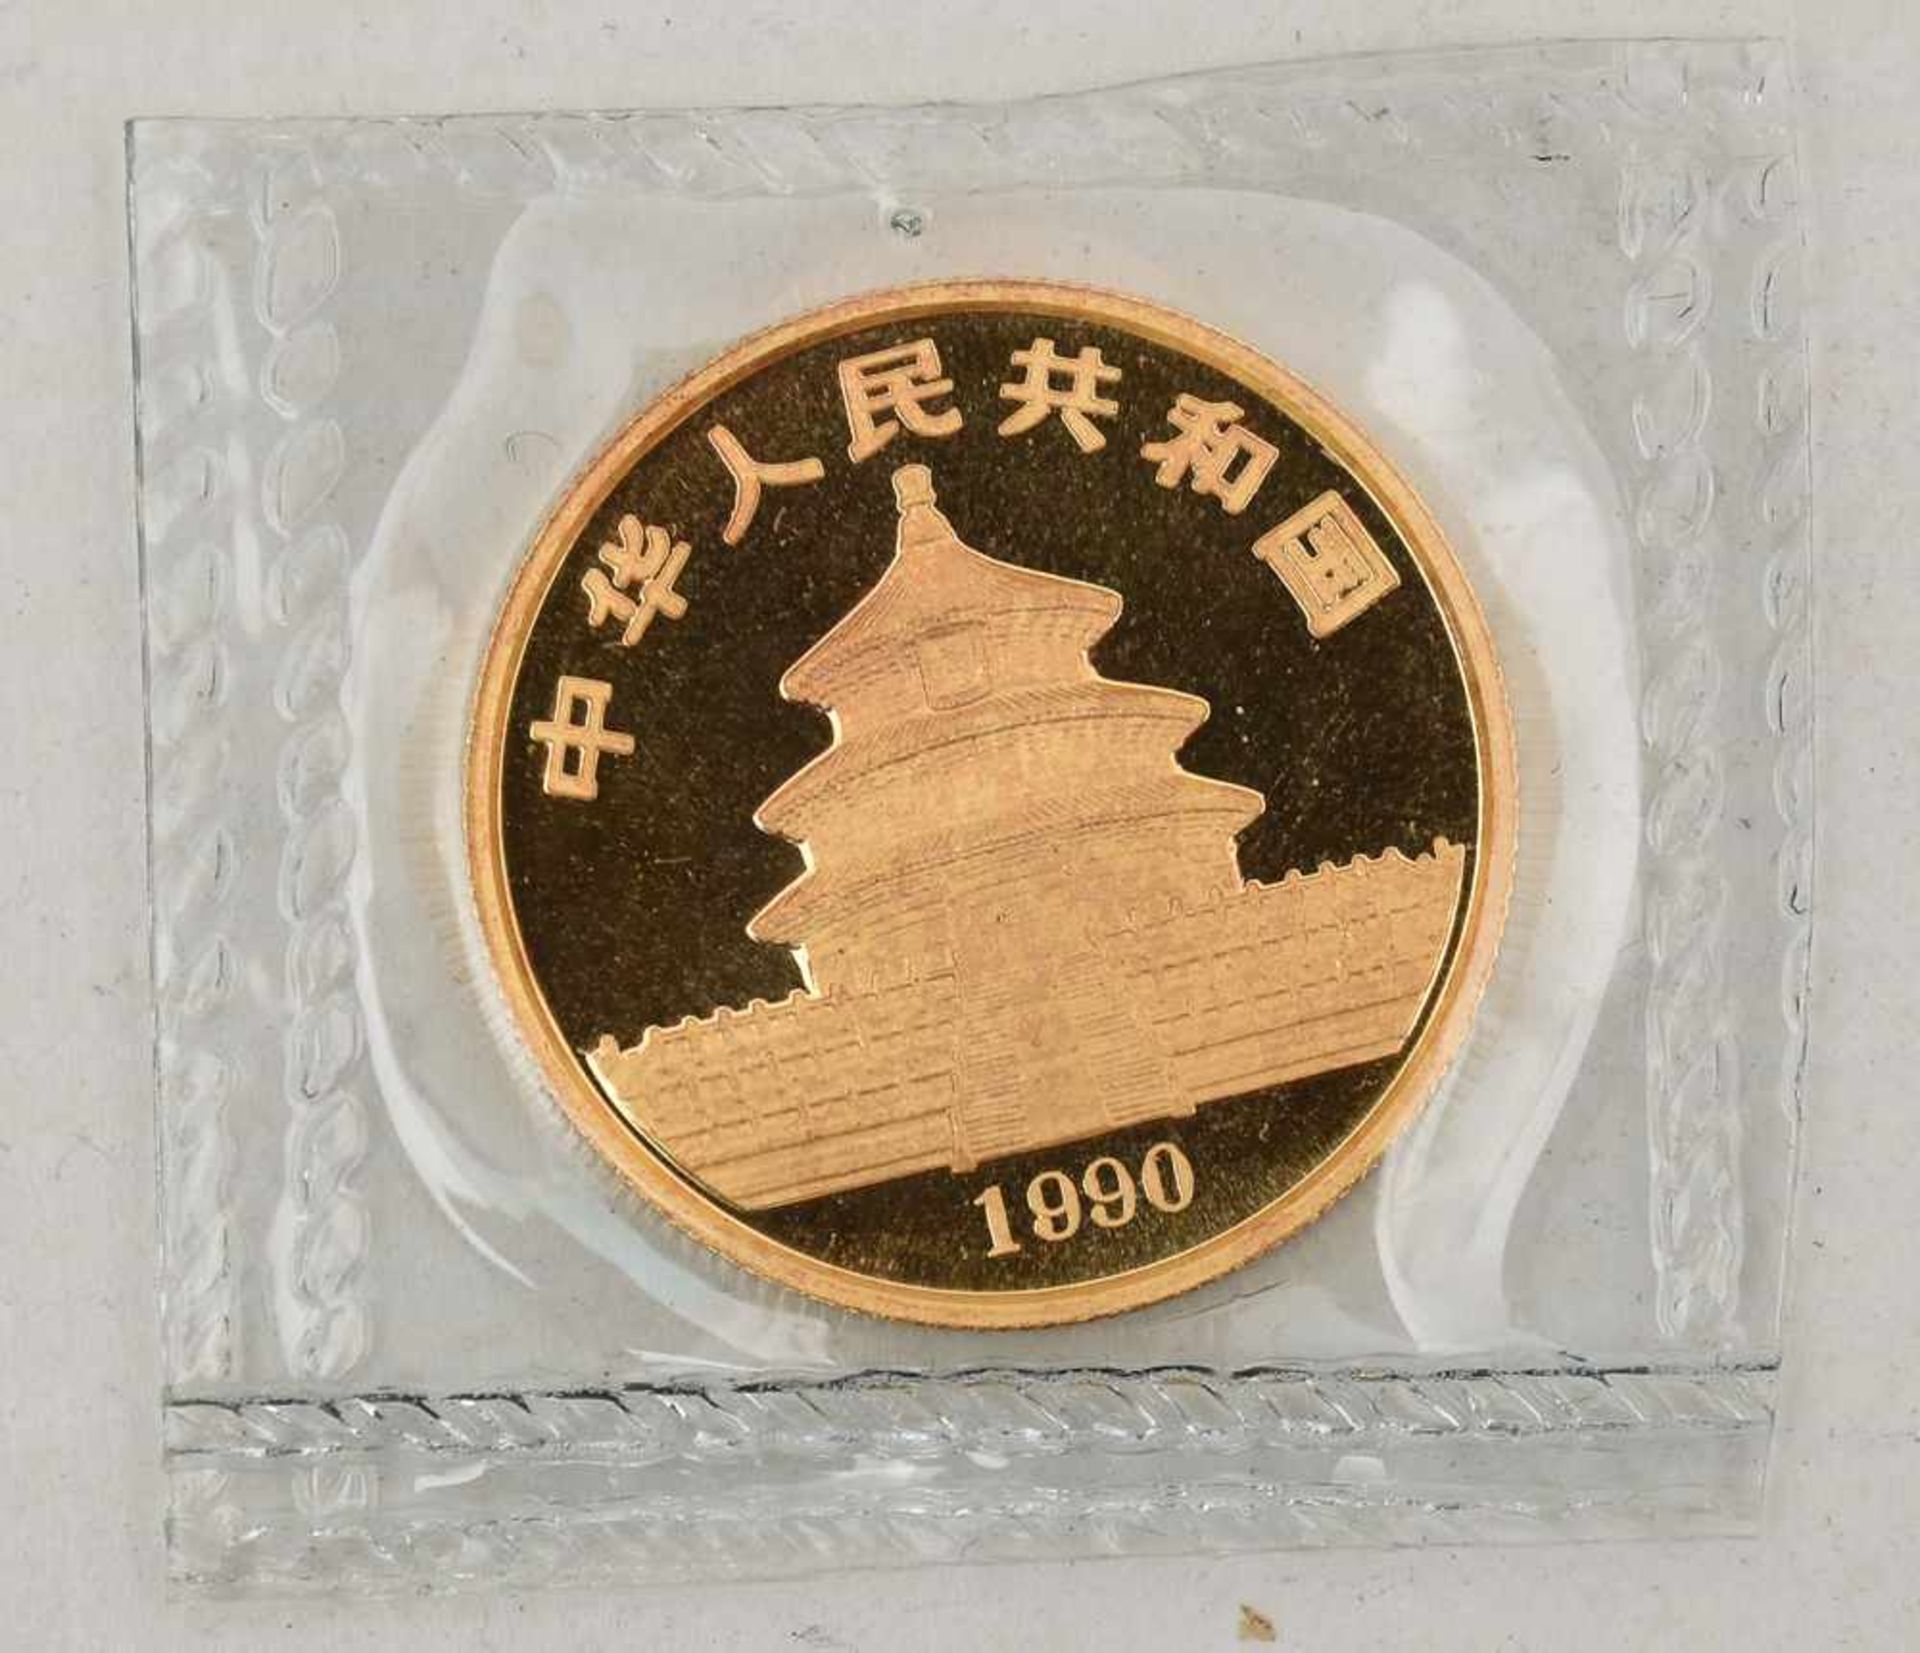 GOLDMÜNZE, China Panda 50 Yuan, 1/2 Unze, 20. Jhd. (15) Gewicht: 15,6 gramm, 999 Gold - Bild 2 aus 2